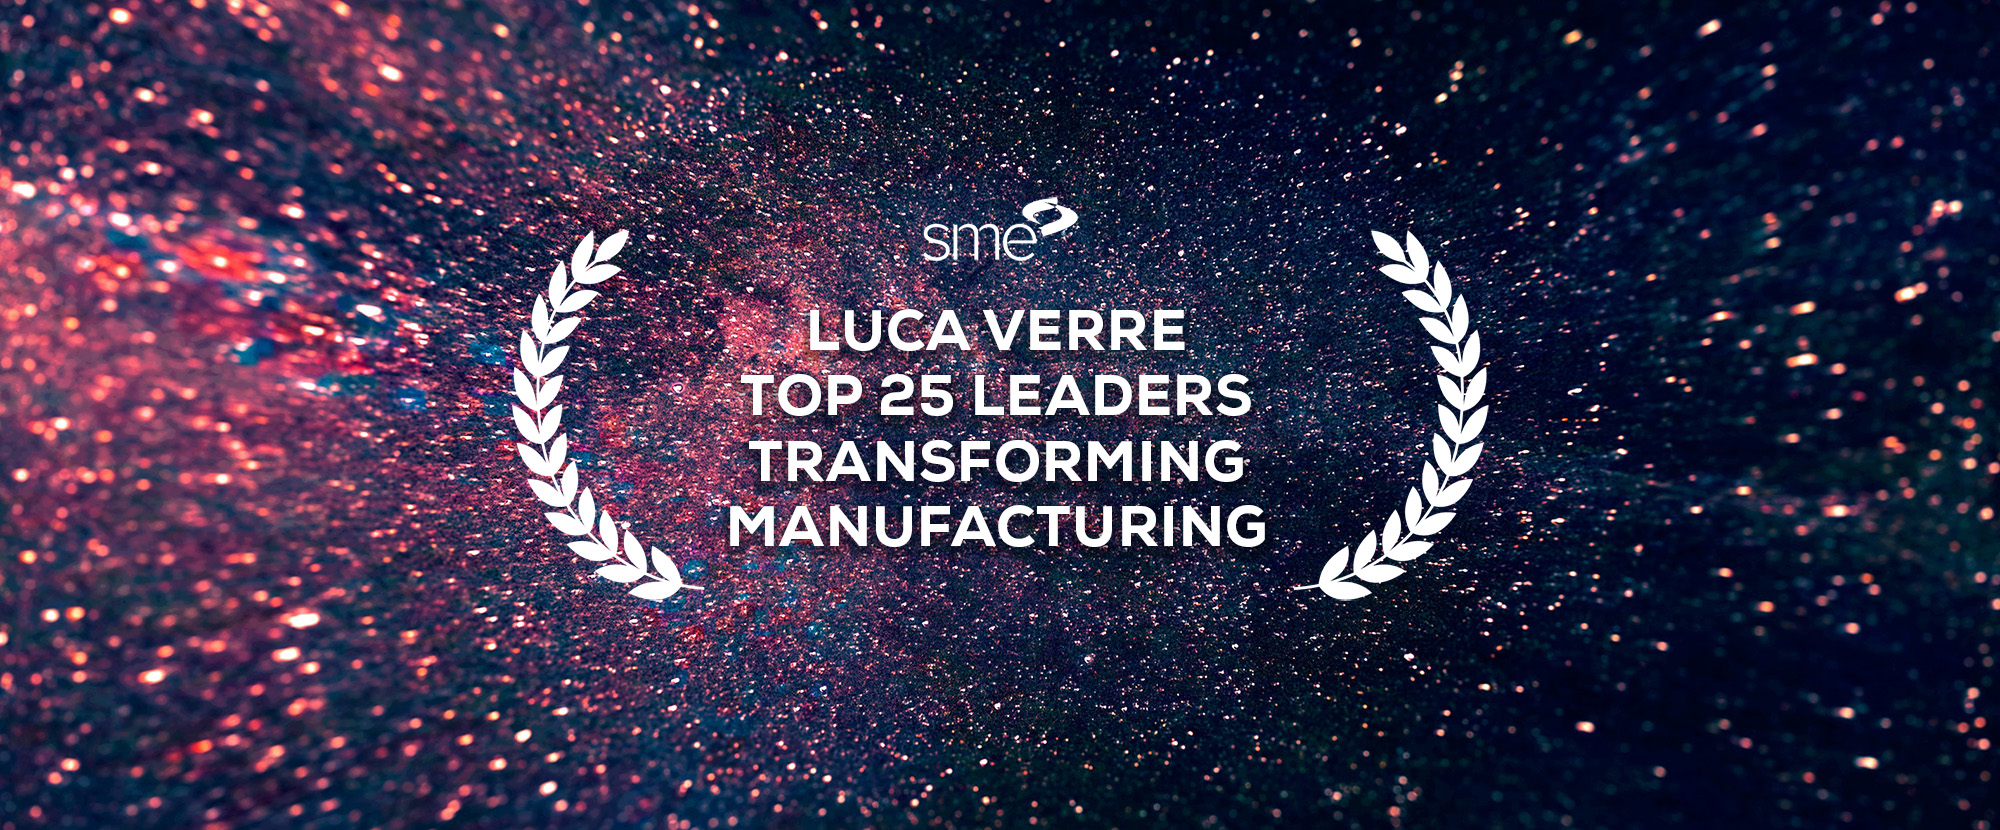 Luca Verre top 25 leaders